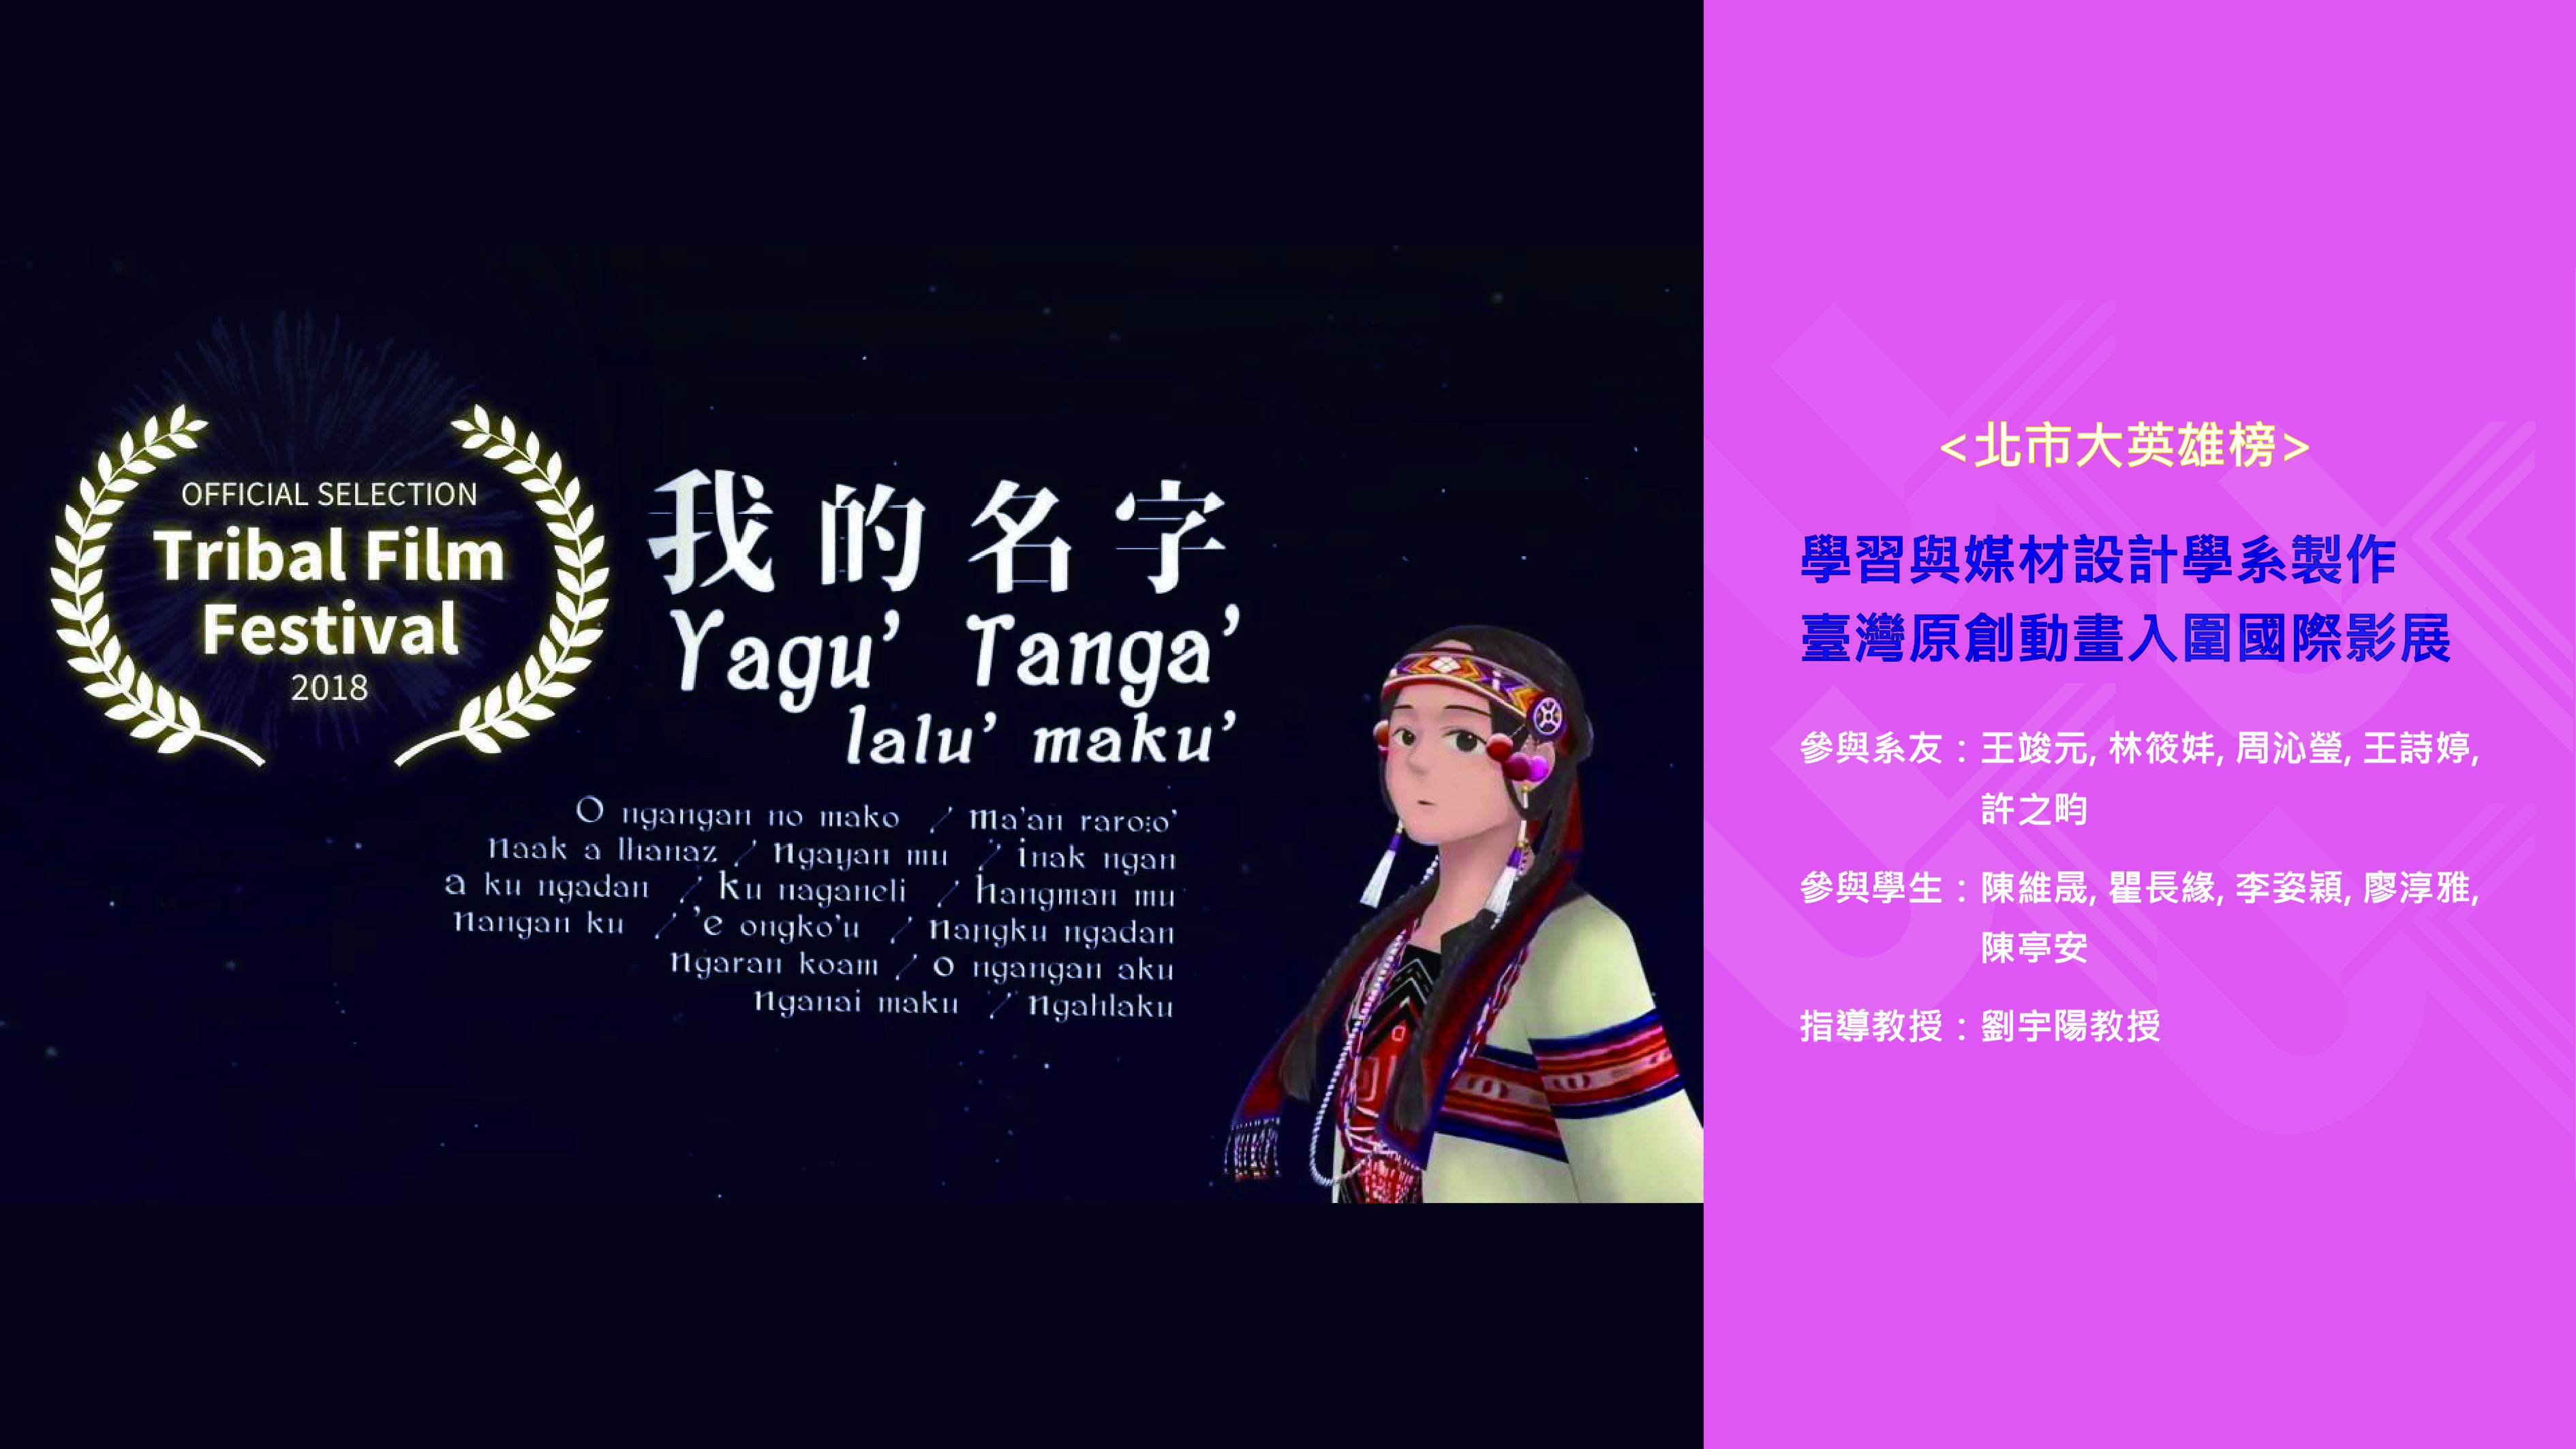 臺灣原創動畫「我的名字Yagu’ Tanga’」入圍國際影展